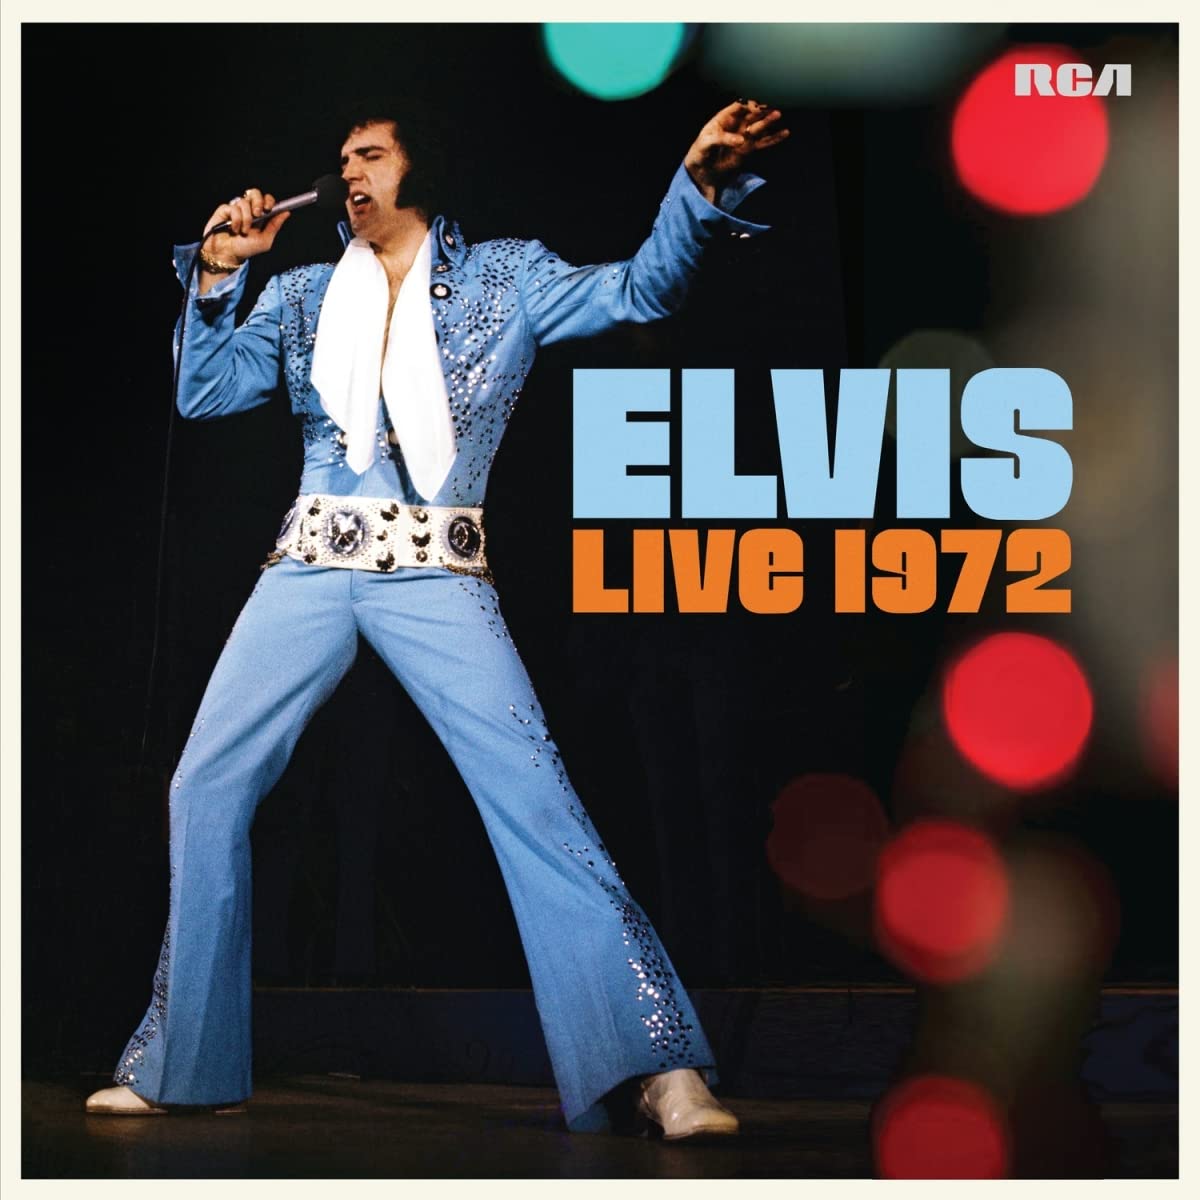 Vinile Elvis Presley - Elvis Live 1972 (2 Lp) NUOVO SIGILLATO, EDIZIONE DEL 24/03/2023 SUBITO DISPONIBILE